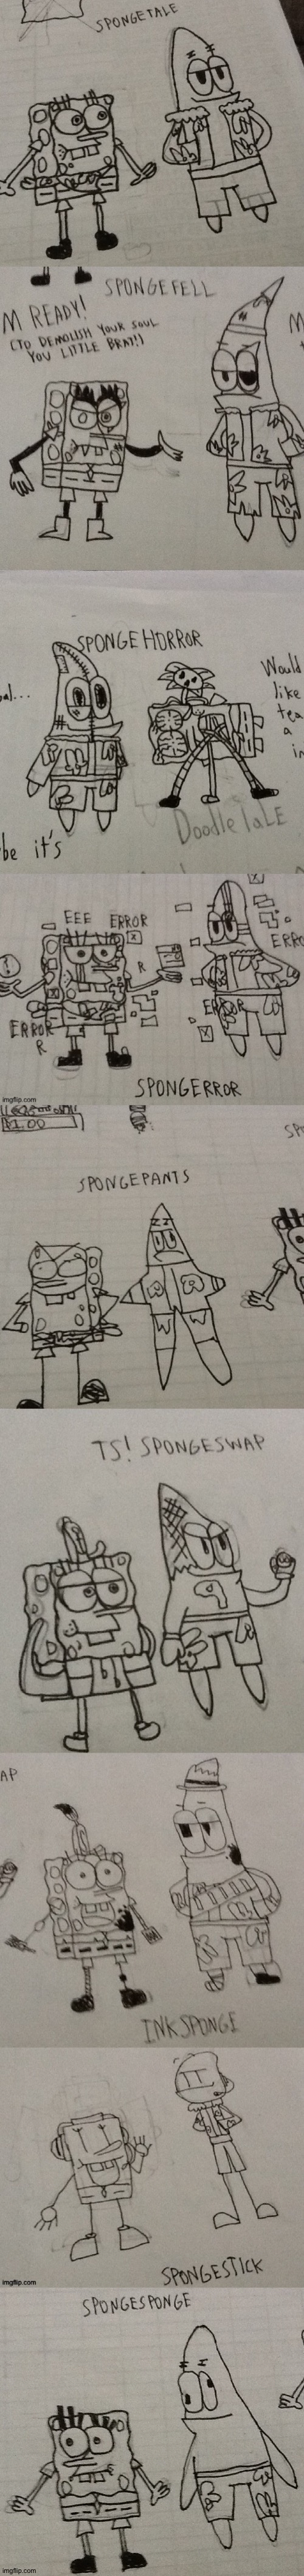 Spongetale AUS | image tagged in spongebob,undertale,au,memes,patrick star,drawings | made w/ Imgflip meme maker